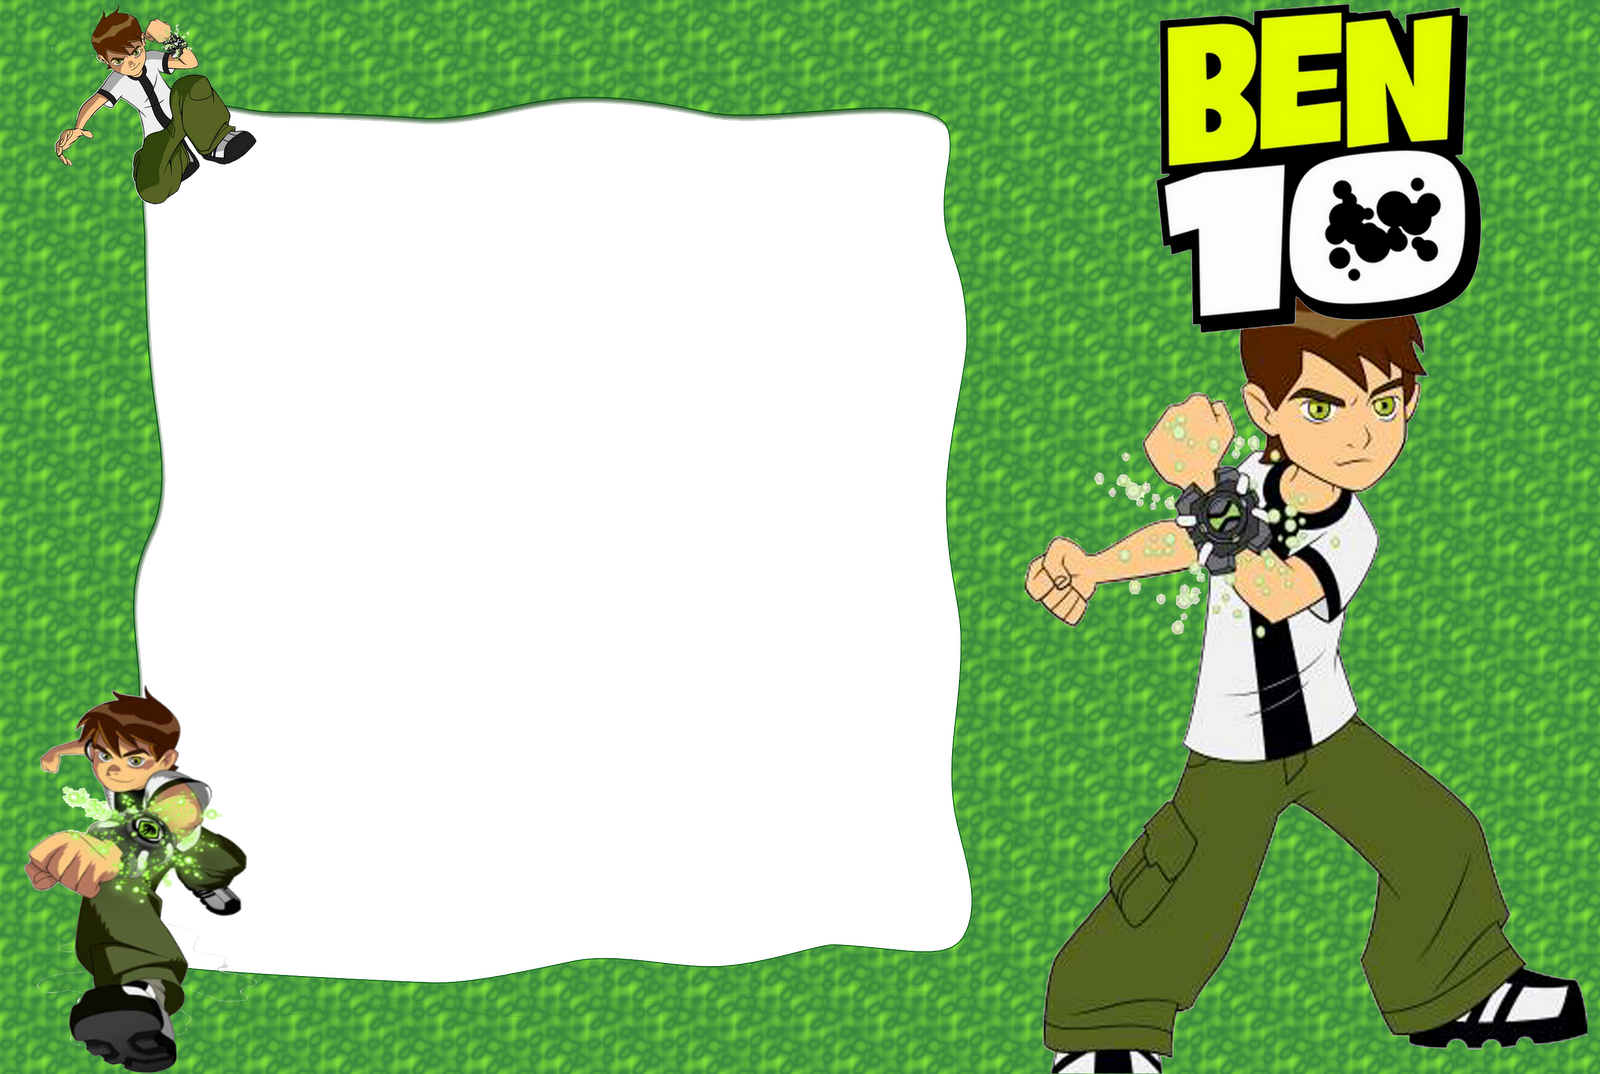 ben 10 wallpaper,cartoon,green,games,fictional character,player